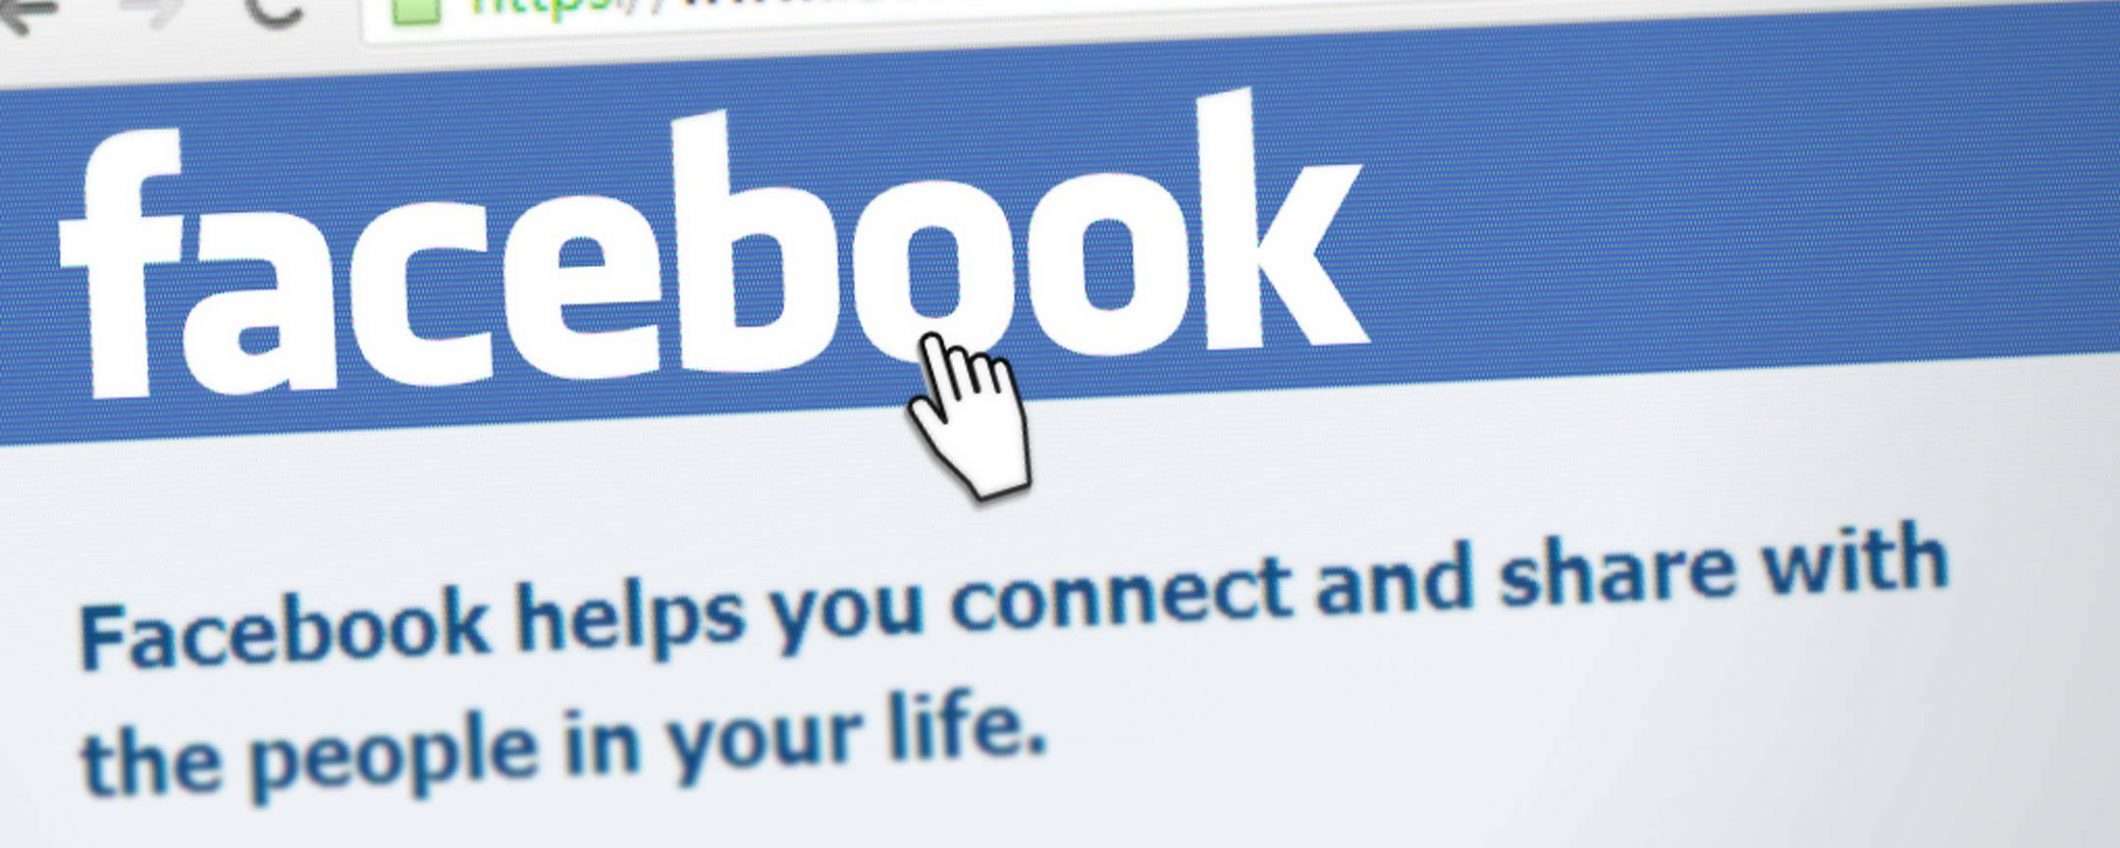 Facebook: numeri telefono, riconoscimento facciale